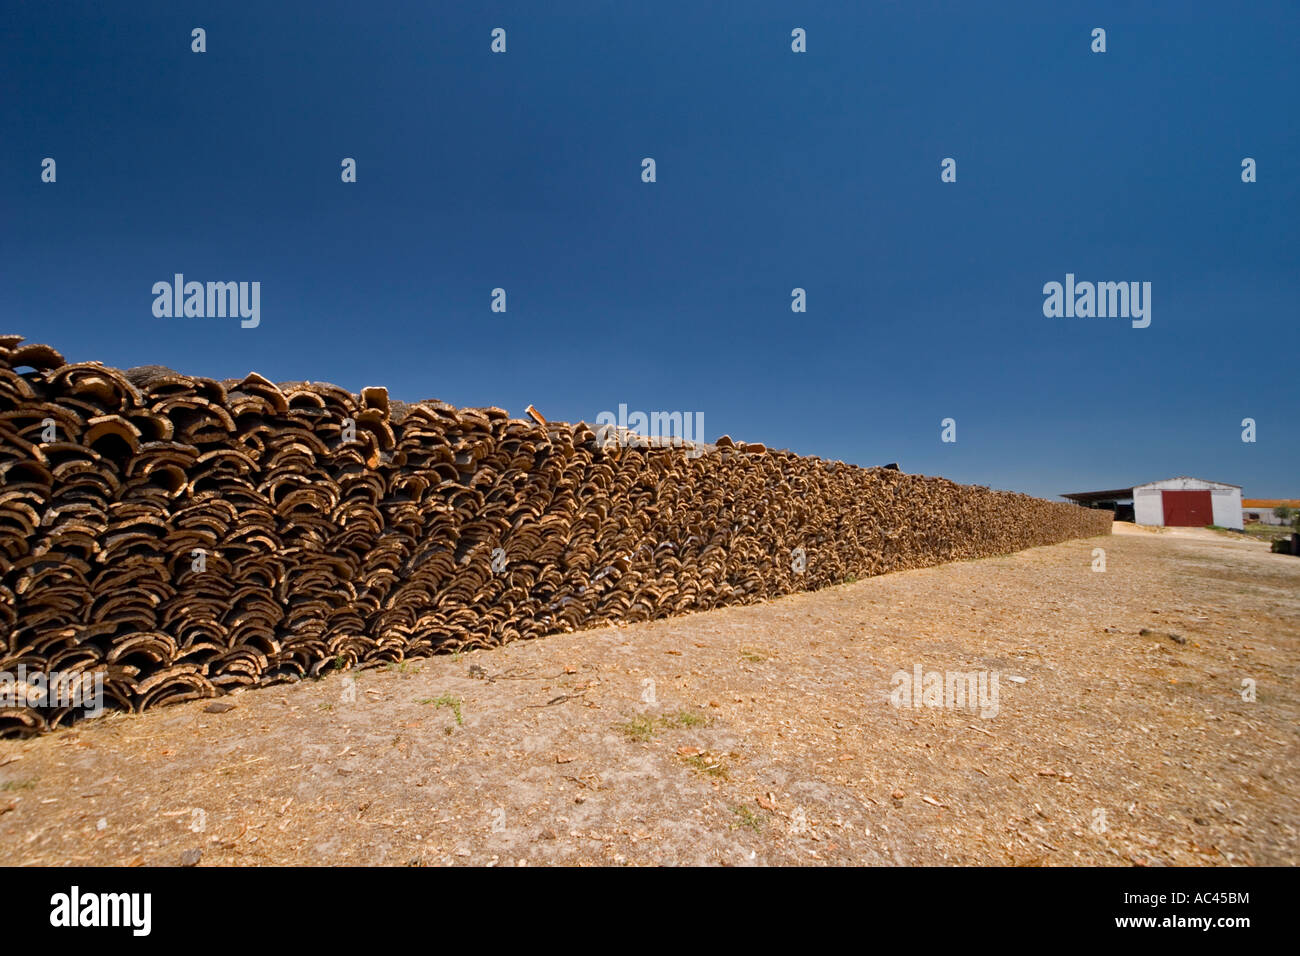 After harvesting of the cork tree bark (Portugal). Récolte d'écorce de chênes-lièges (Quercus suber) en Alentejo (Portugal). Stock Photo